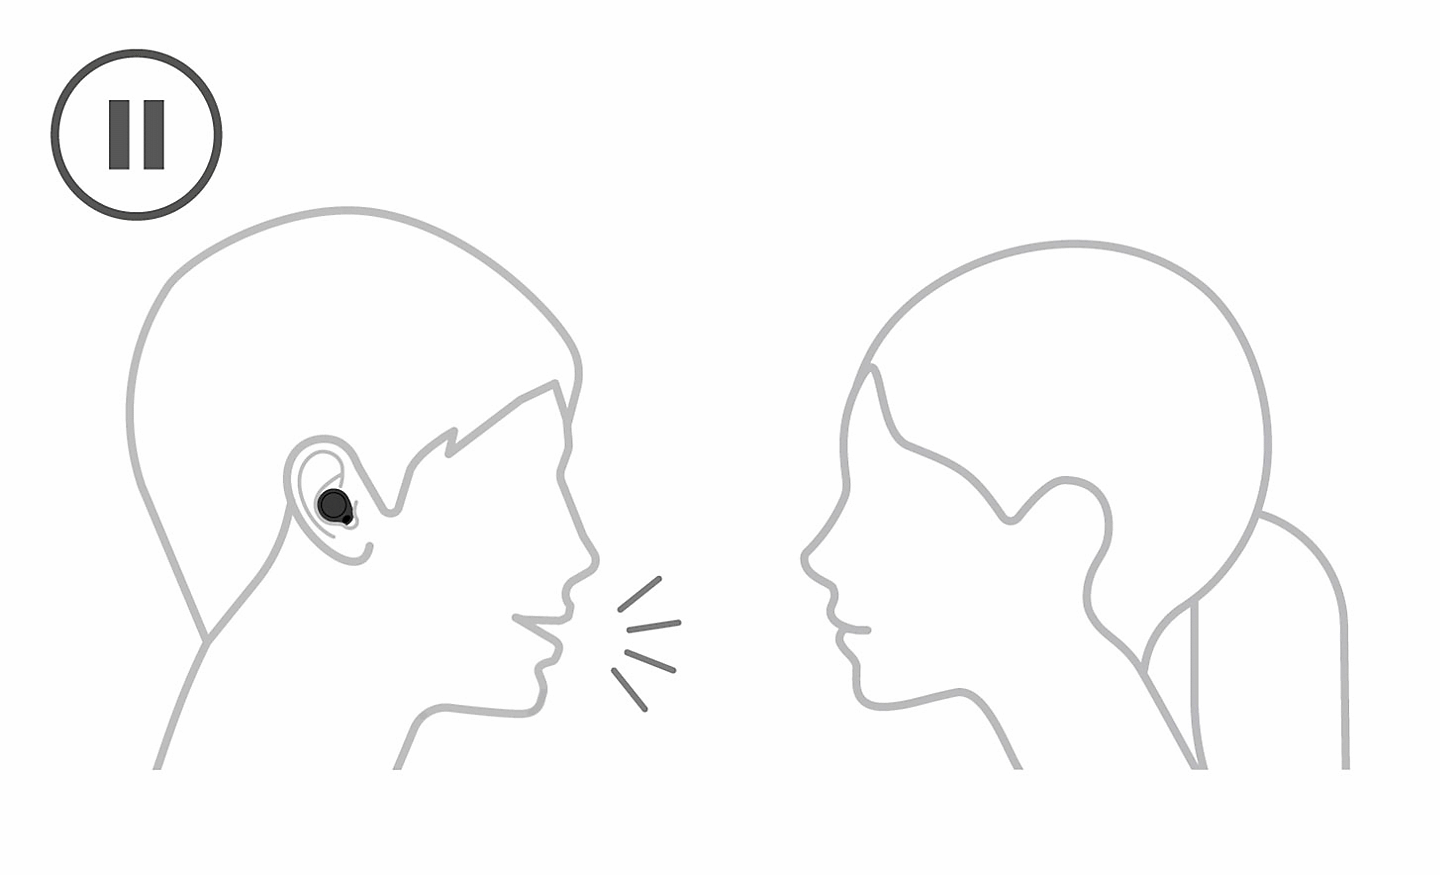 헤드폰을 착용한 사람과 헤드폰을 착용하지 않은 사람이 대화하는 그림을 그려주세요. 일시 중지 아이콘은 상단 왼쪽에 있습니다.